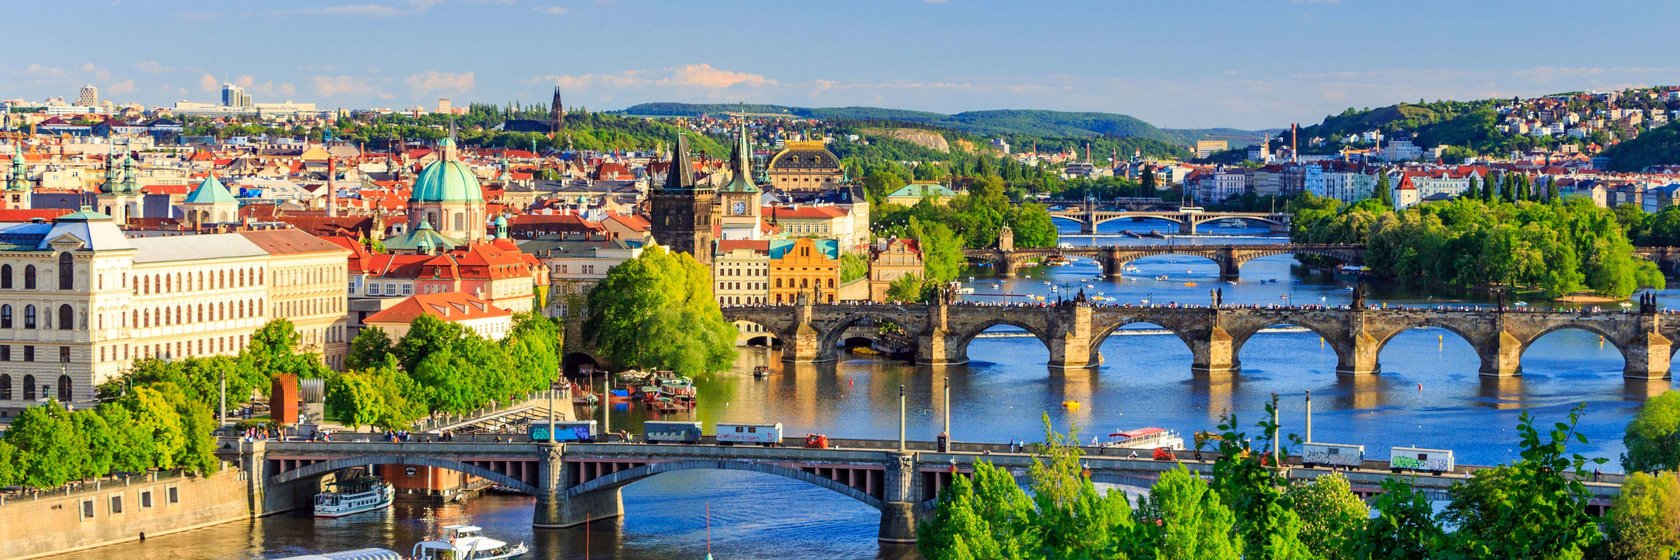 Praktické informace o o Praze a okolí